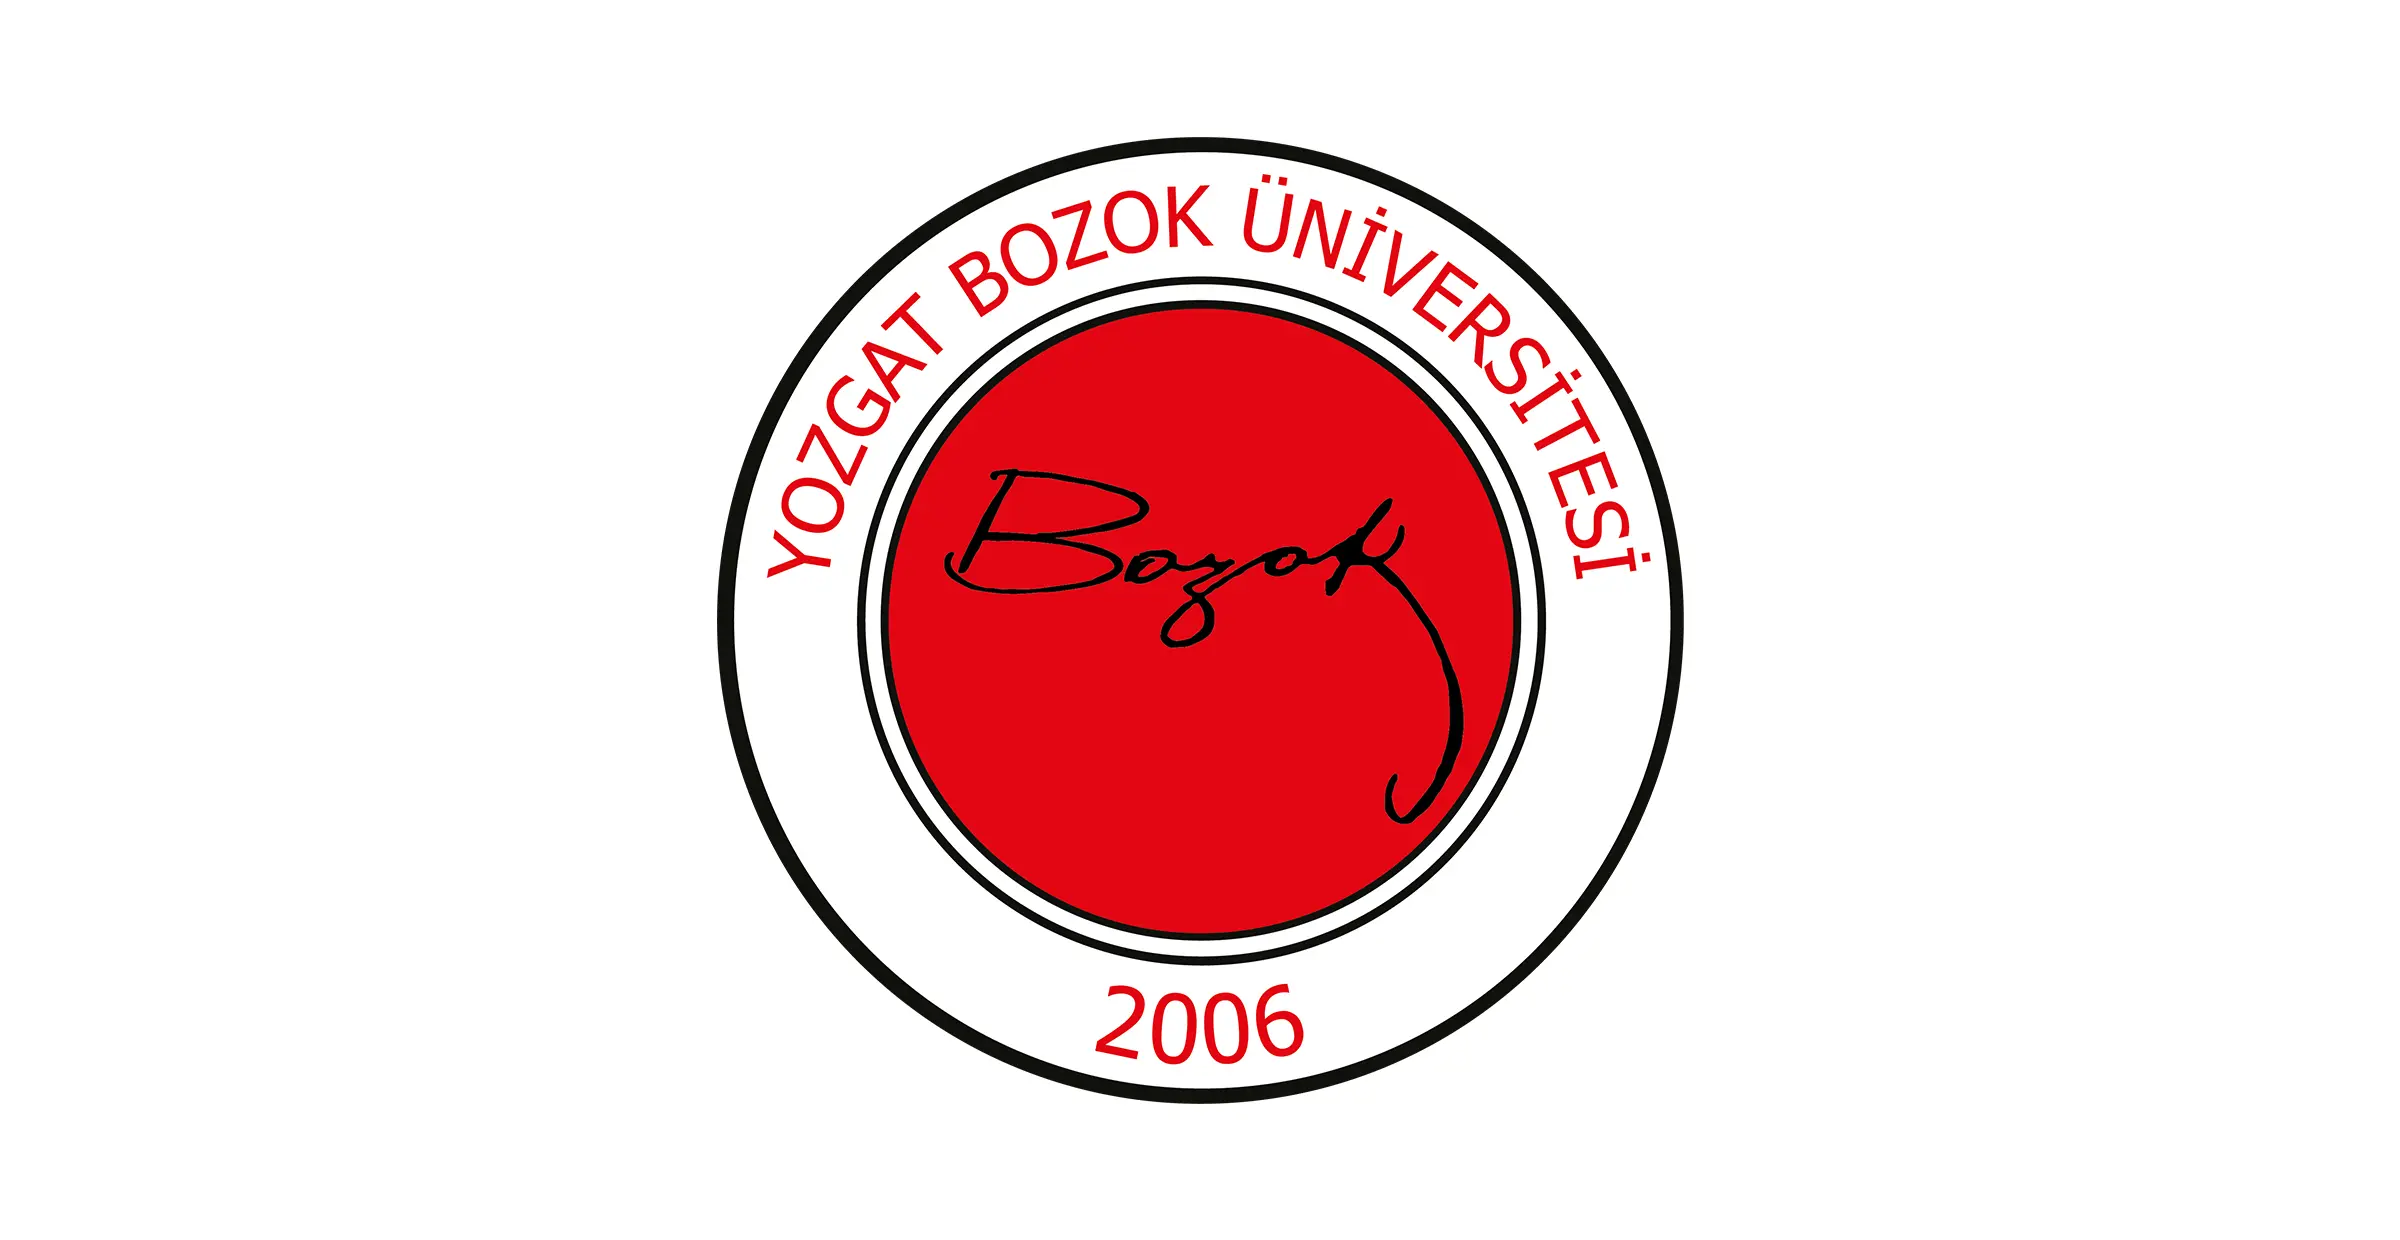 تأسست جامعة يوزغات بوزوك Yozgat Bozok Üniversitesi عام 2006. وتحتوي جامعة بوزوك على 7 كليات و8 معاهد مهنية و 4 معاهد عالية و 1 معهد دراسات